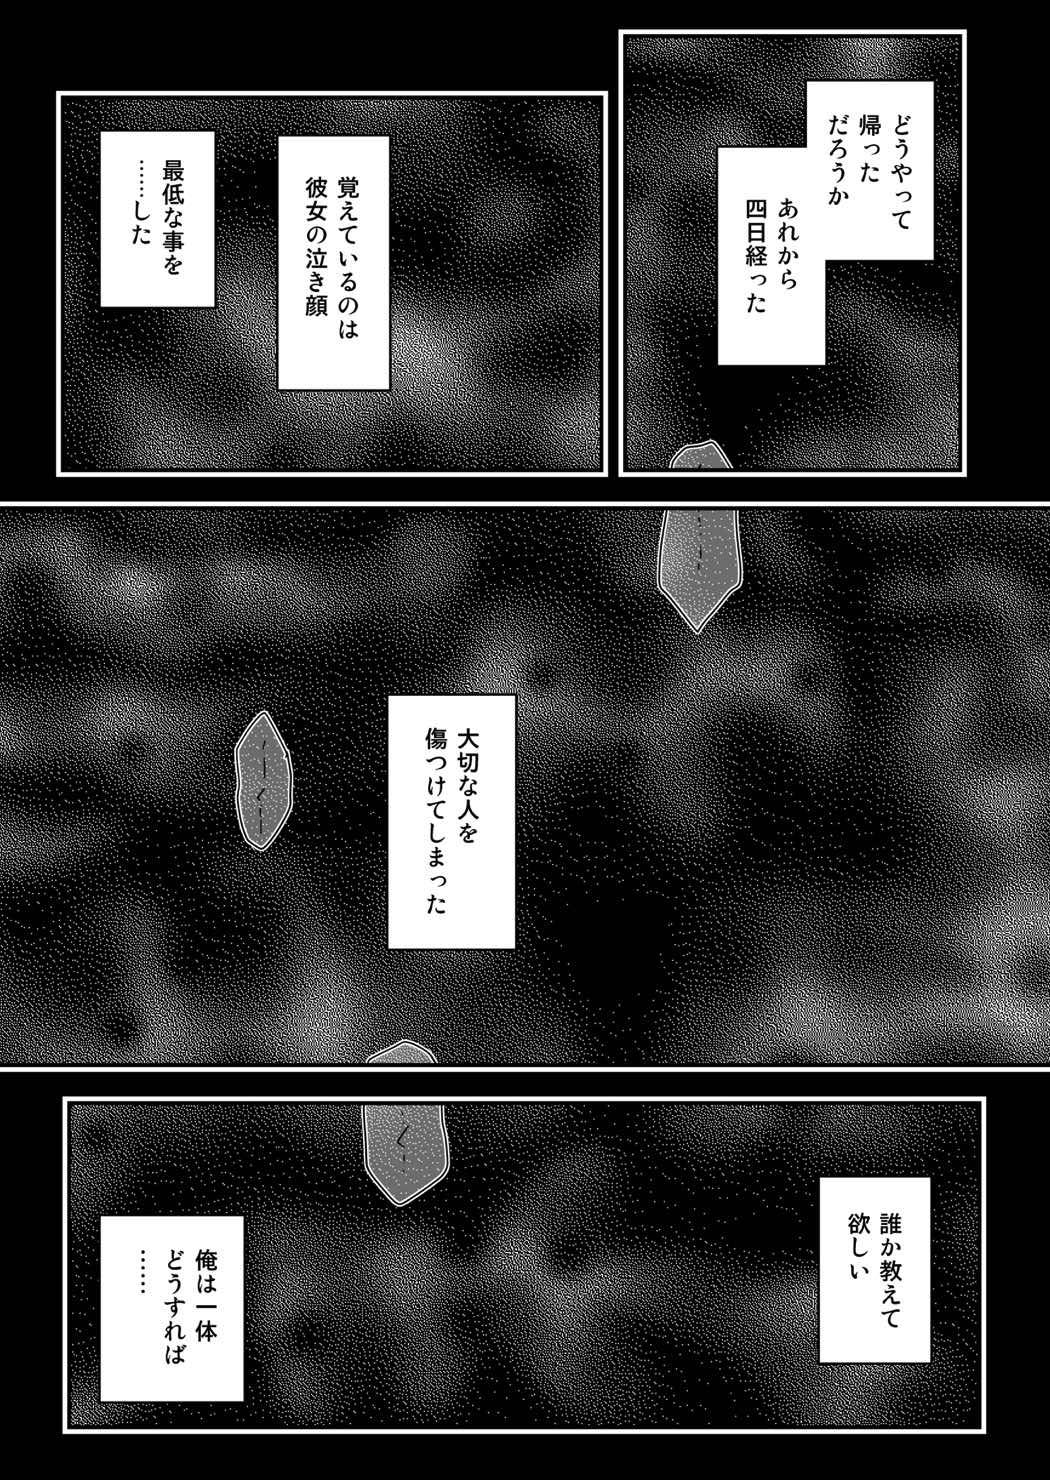 Art ＊＊＊＊＊＊＊＊＊! 2 - Seitokai yakuindomo Storyline - Page 2